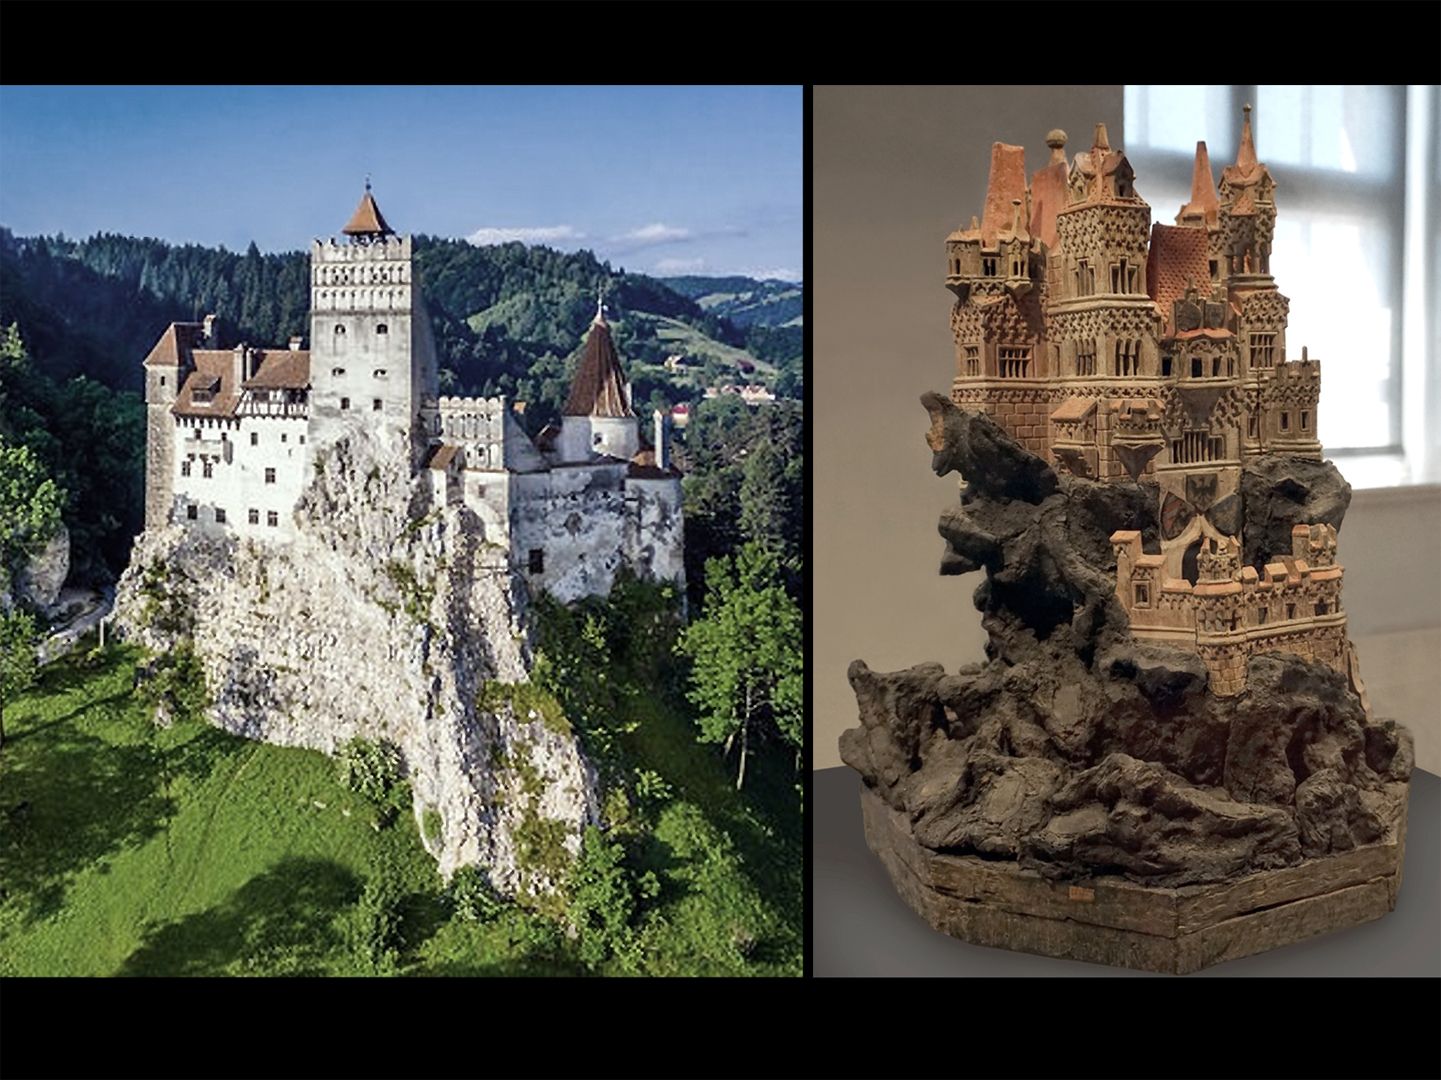 Modell einer Ritterburg So phantasievoll das Burgmodell erscheint, könnte die Felsensituation halbwegs realistisch sein (links Törzburg in Bran, Rumänien, rechts Modell)